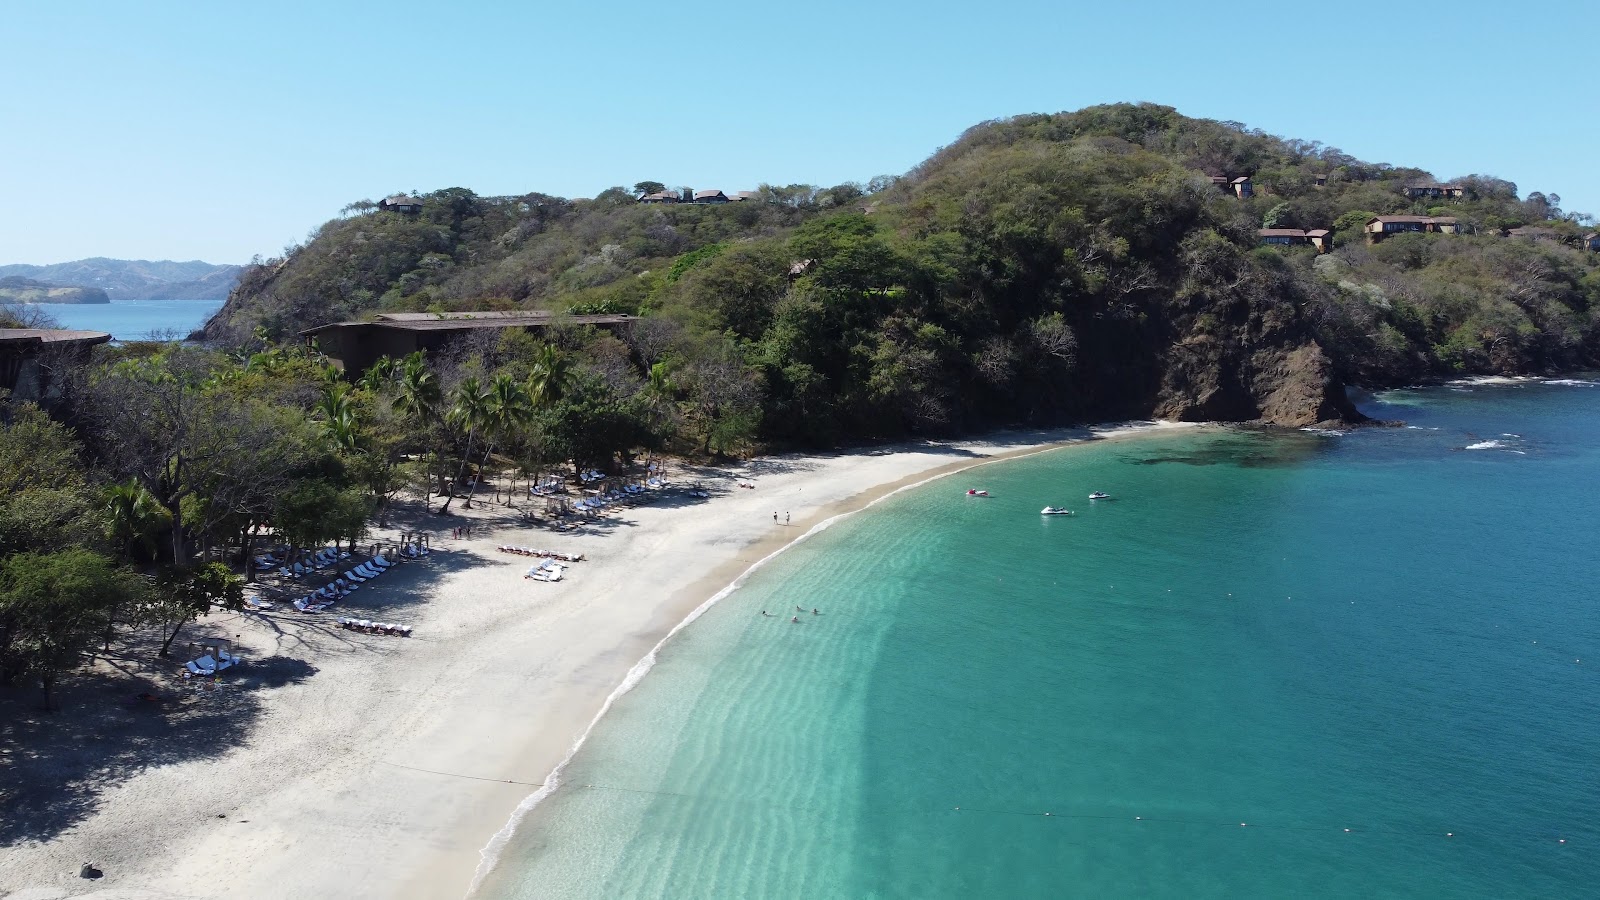 Virador beach'in fotoğrafı doğal alan içinde bulunmaktadır